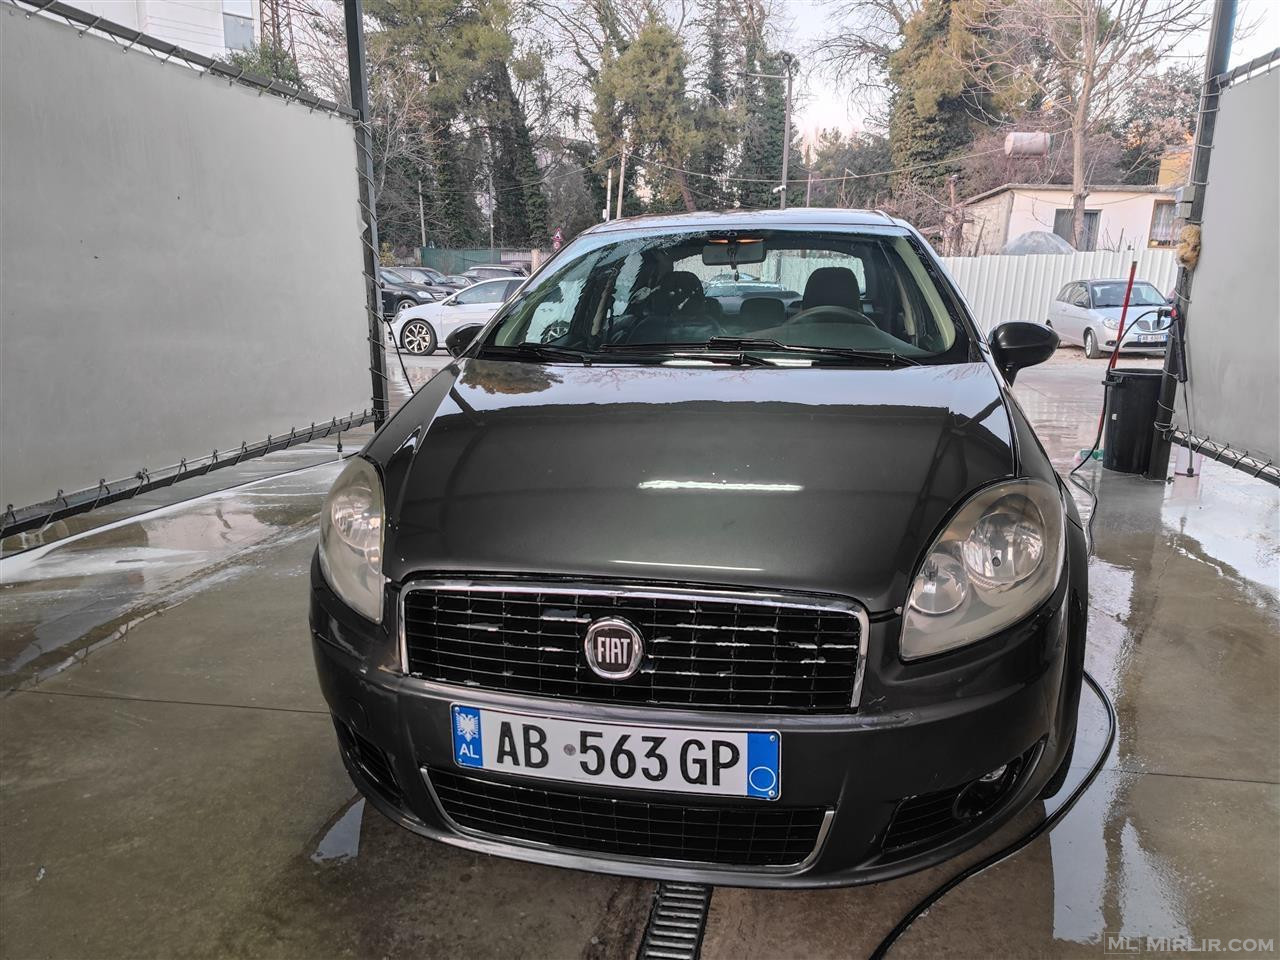 Fiat Linea 2007 (1.4 Benzine -Gaz) okazion